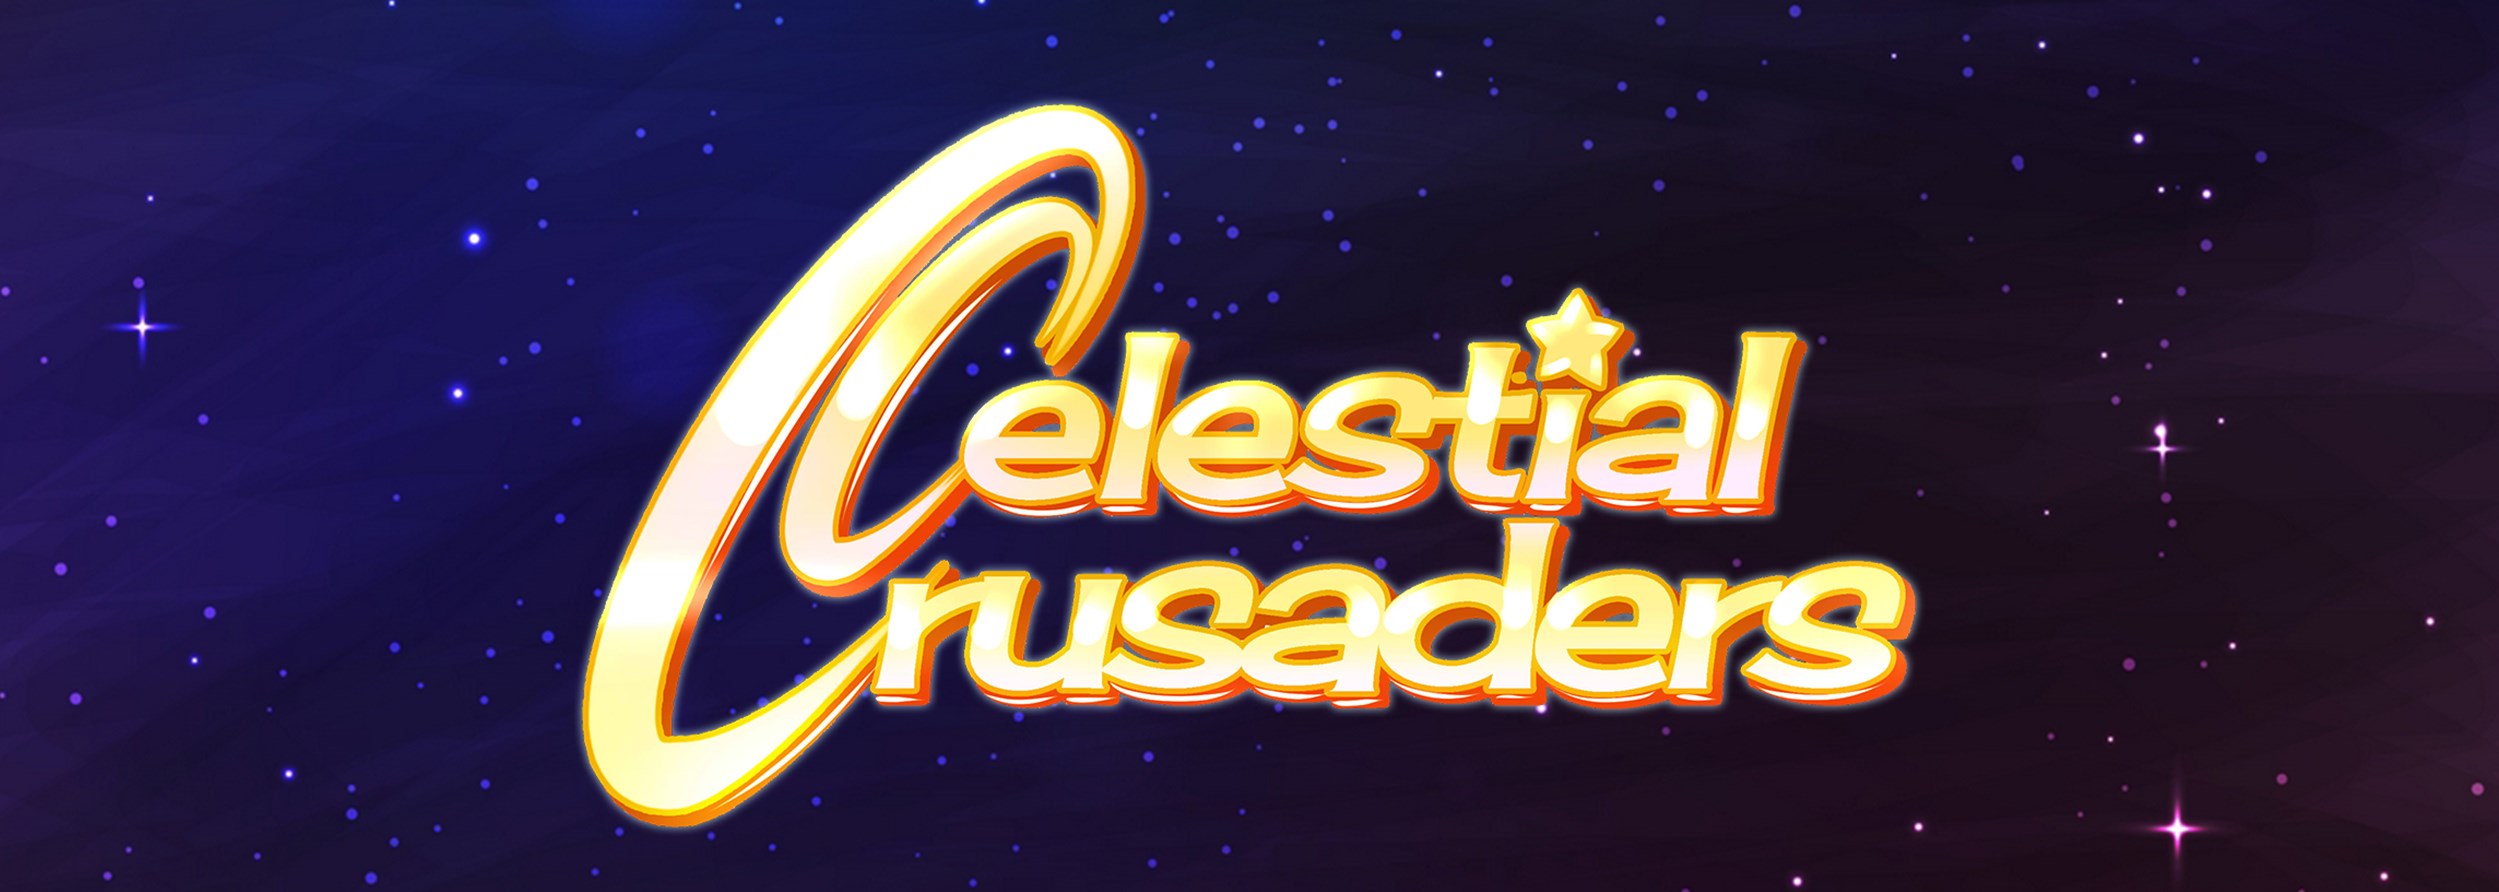 Celestial Crusaders (DEMO)